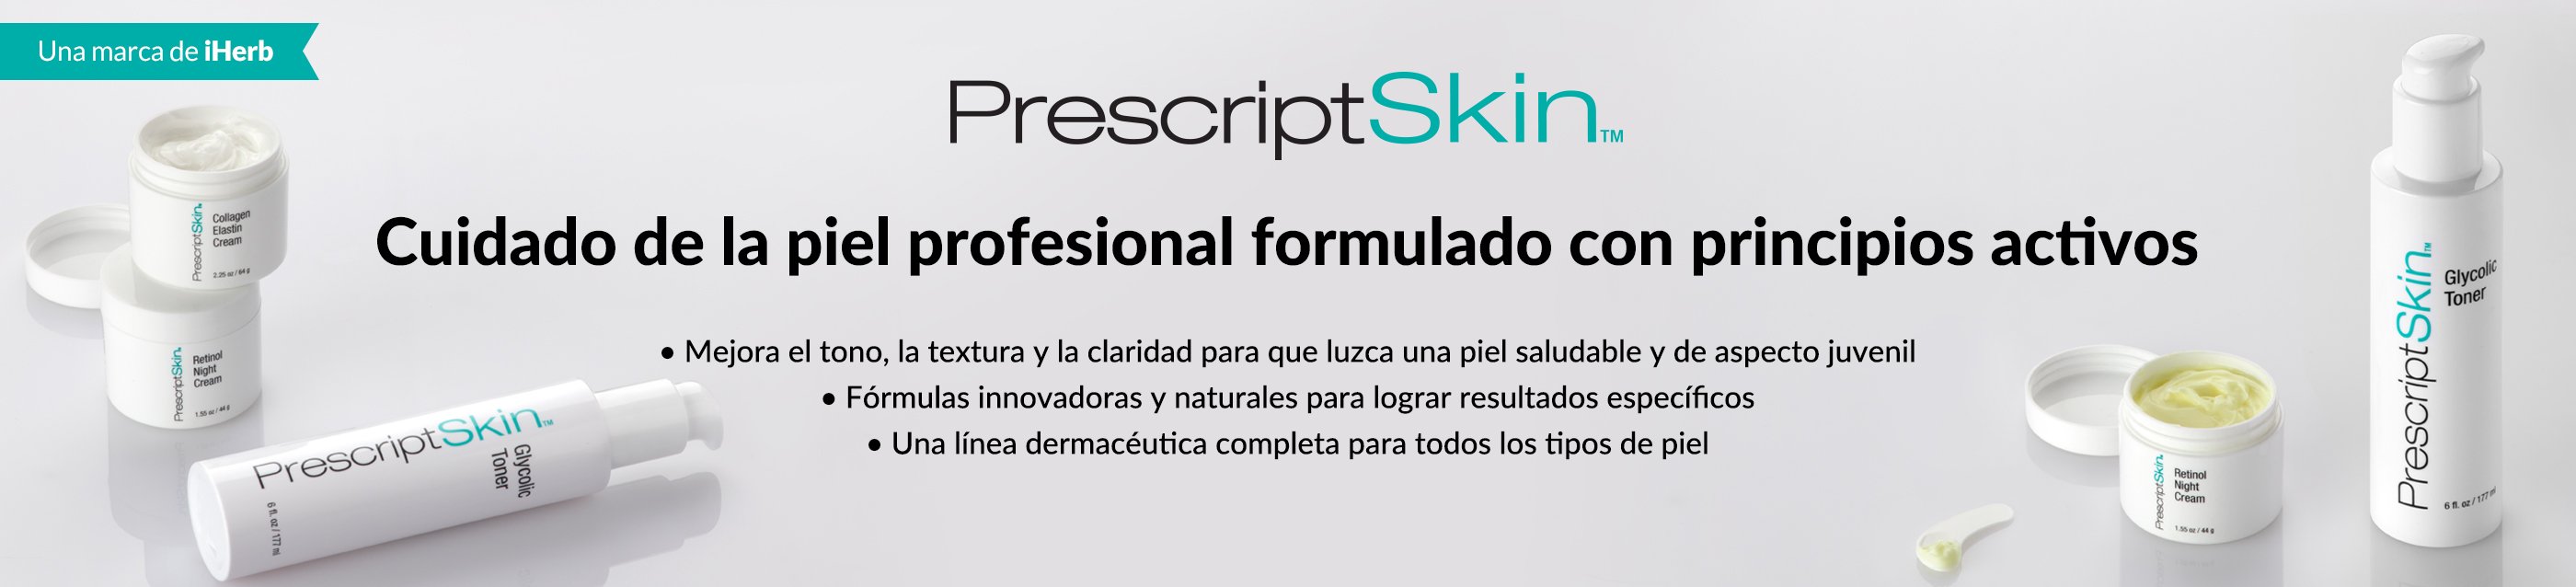 PrescriptSkin